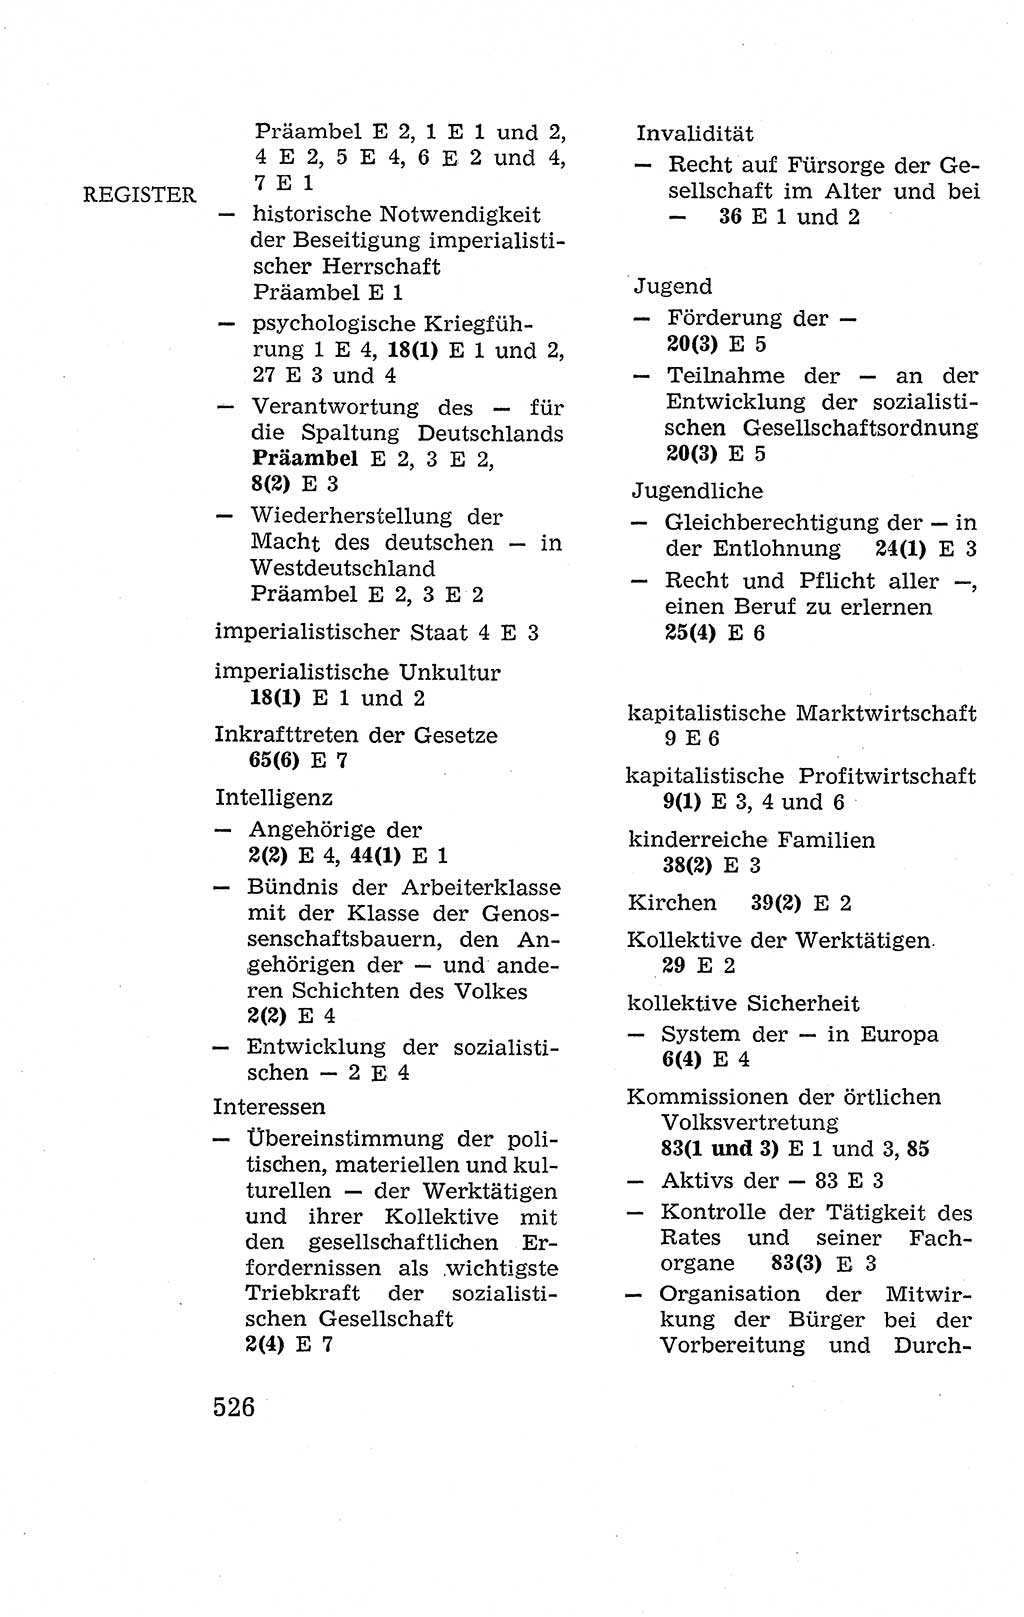 Verfassung der Deutschen Demokratischen Republik (DDR), Dokumente, Kommentar 1969, Band 2, Seite 526 (Verf. DDR Dok. Komm. 1969, Bd. 2, S. 526)